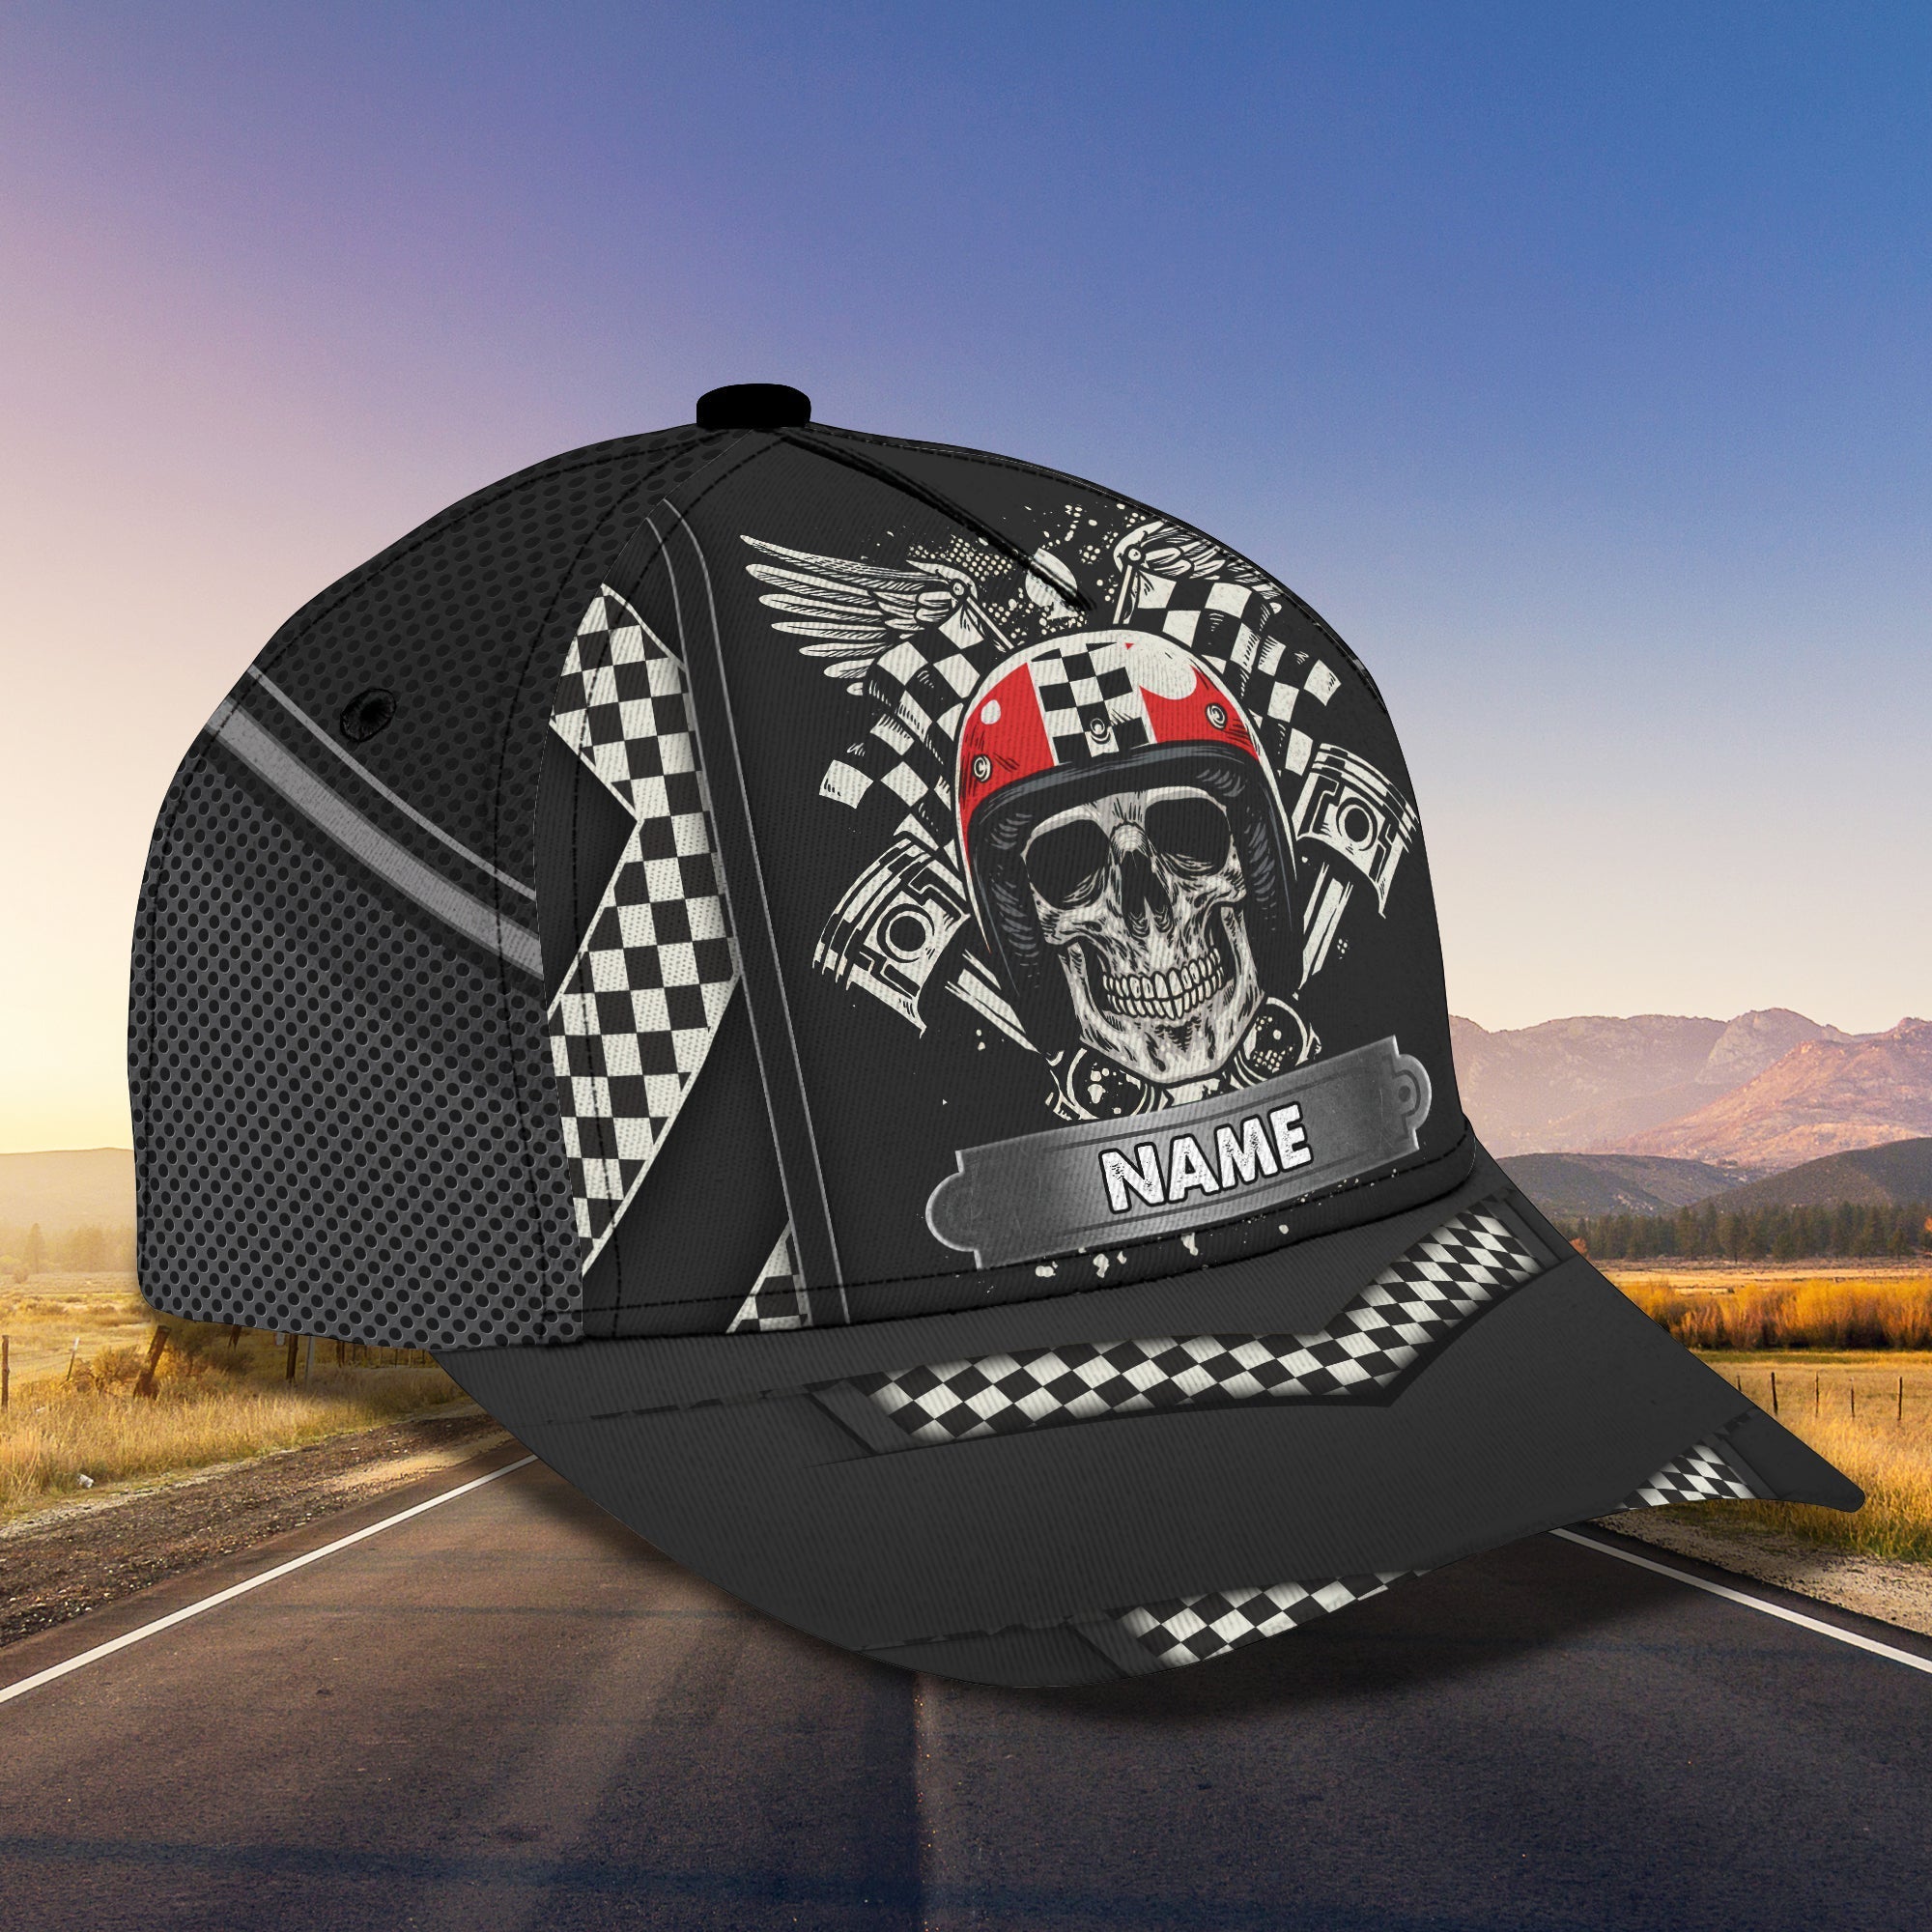 Personalized Racing American Classic Cap Hat/ Skull Racer Cap Hat/ Cool Racing Cap Hat